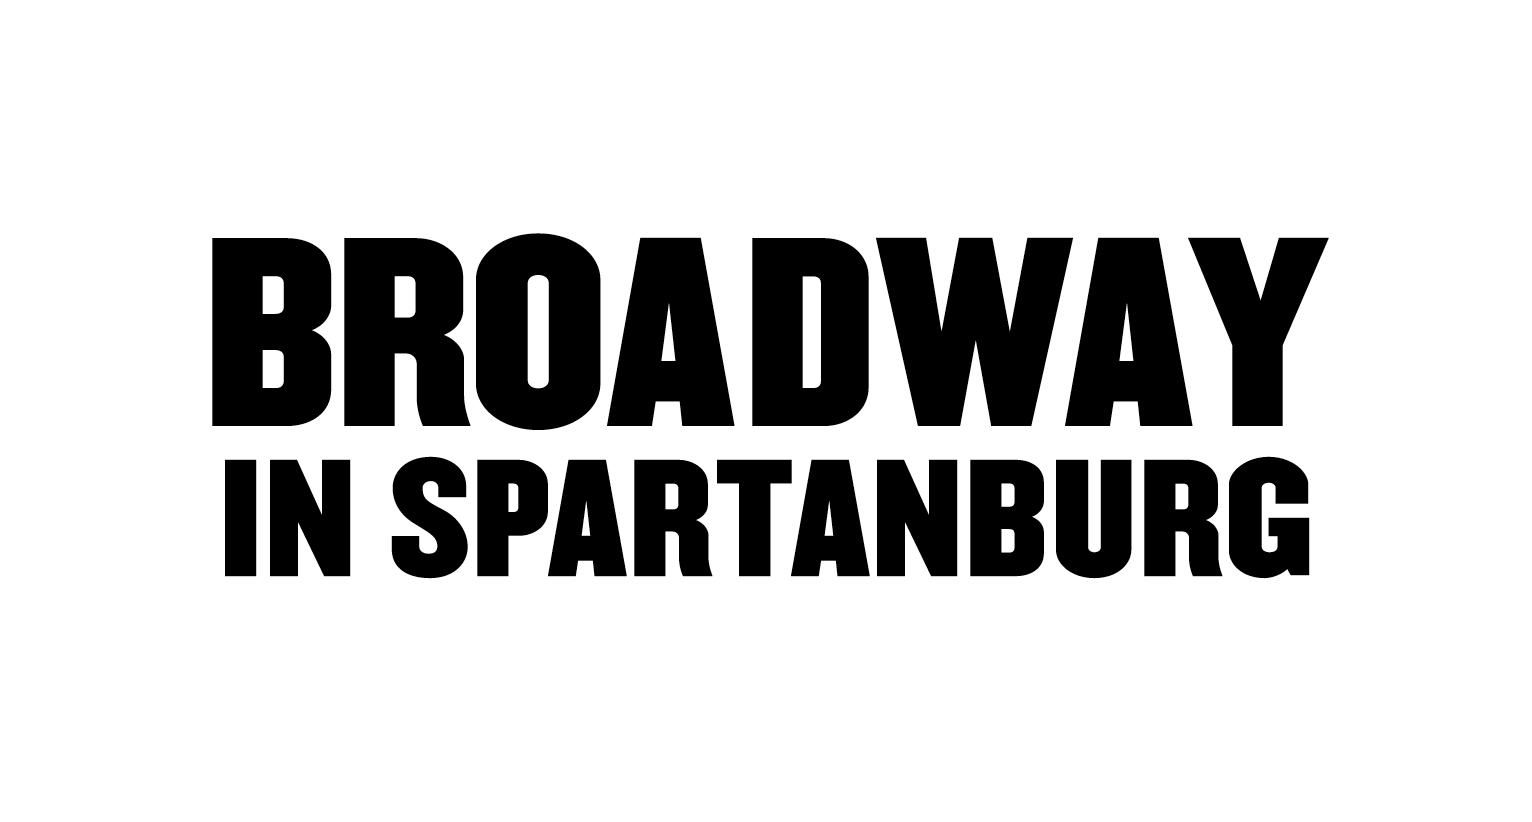 Spartanburg